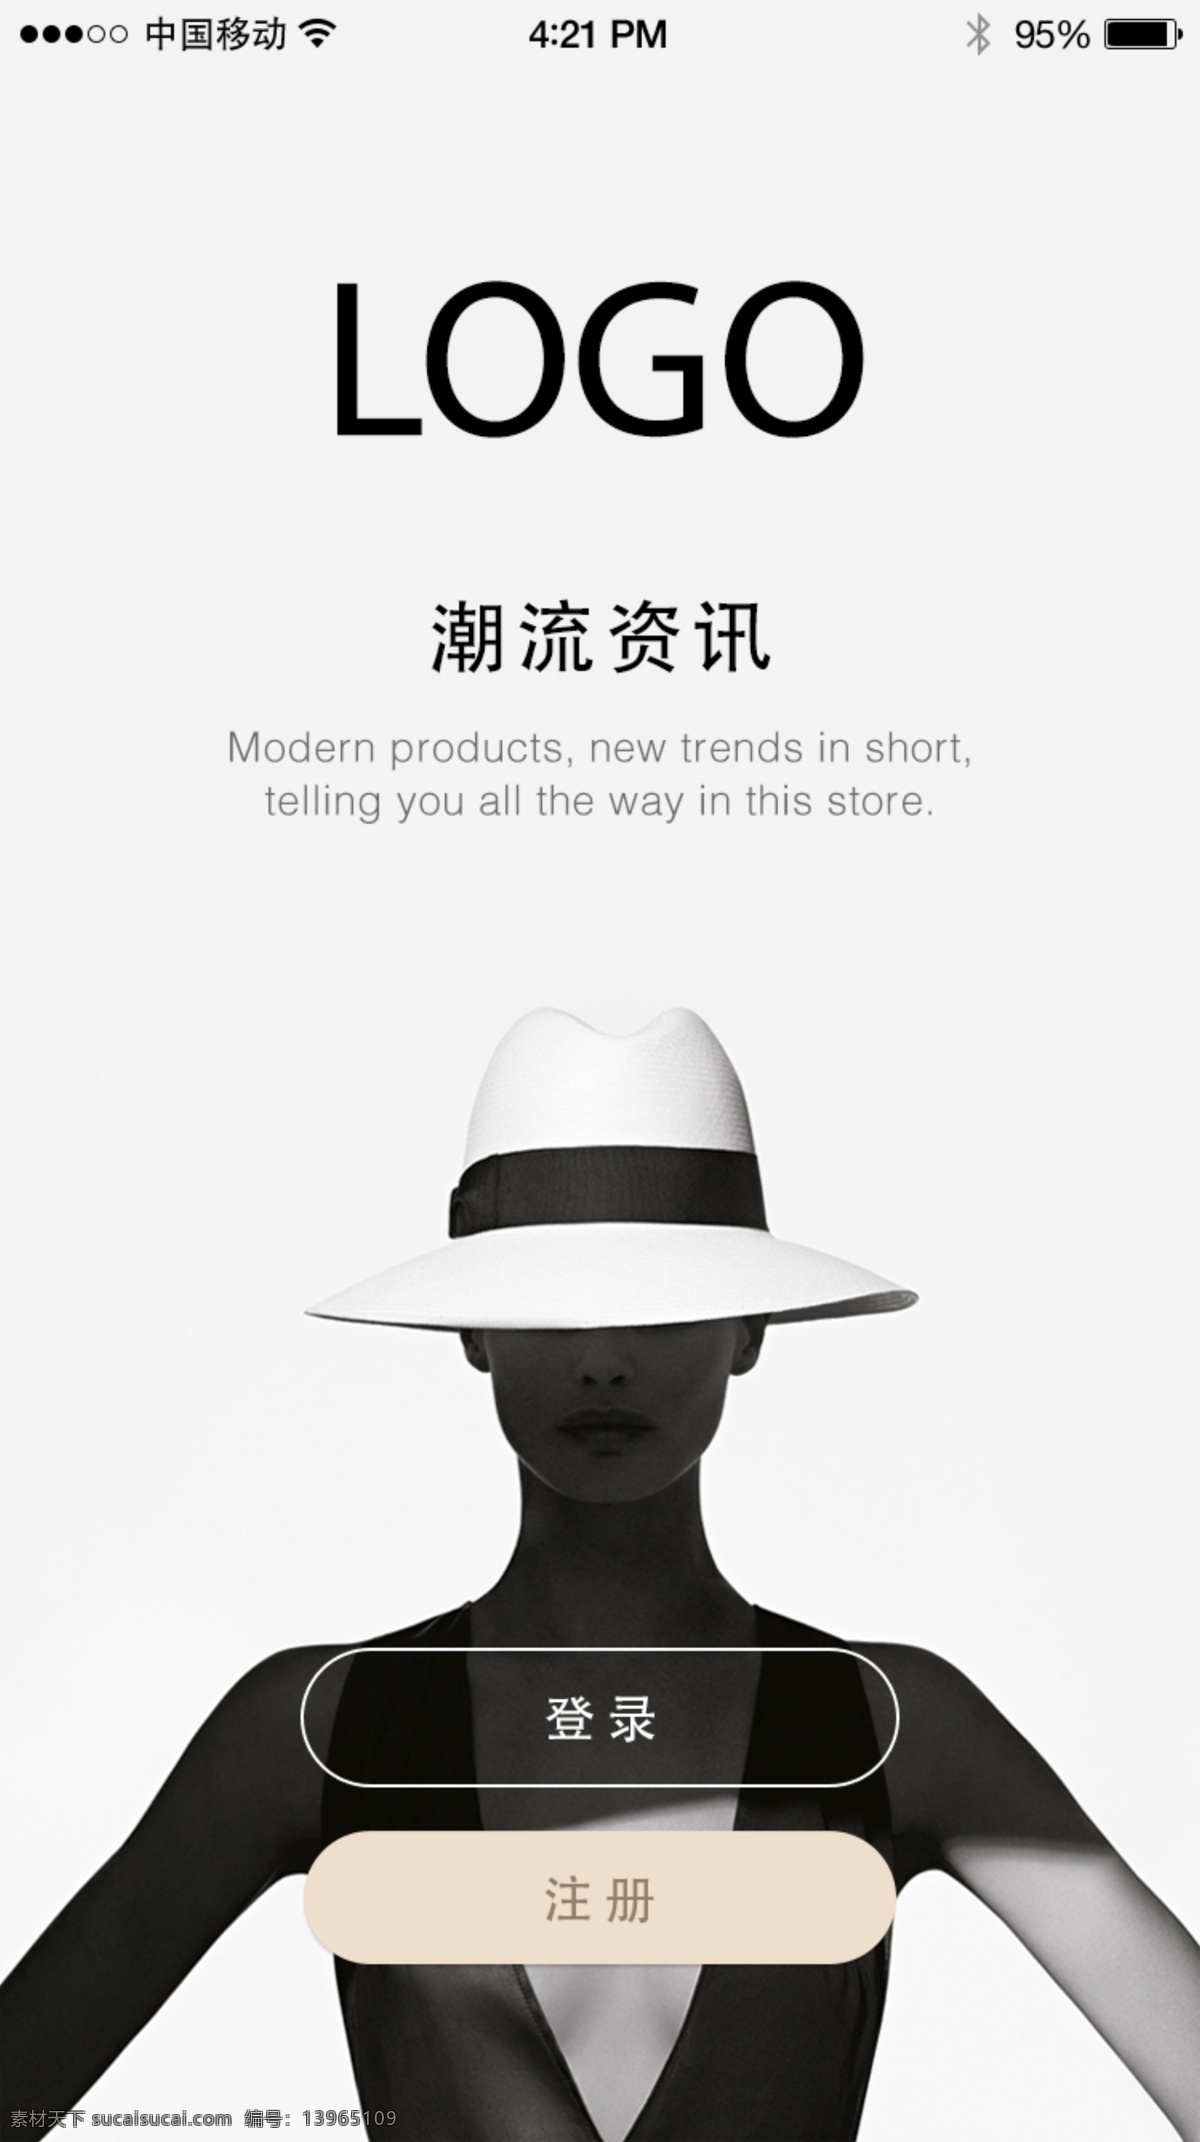 扁平化 时尚 app 登录 页面 ios 苹果 扁平化设计 appui 登录页面 时尚类app